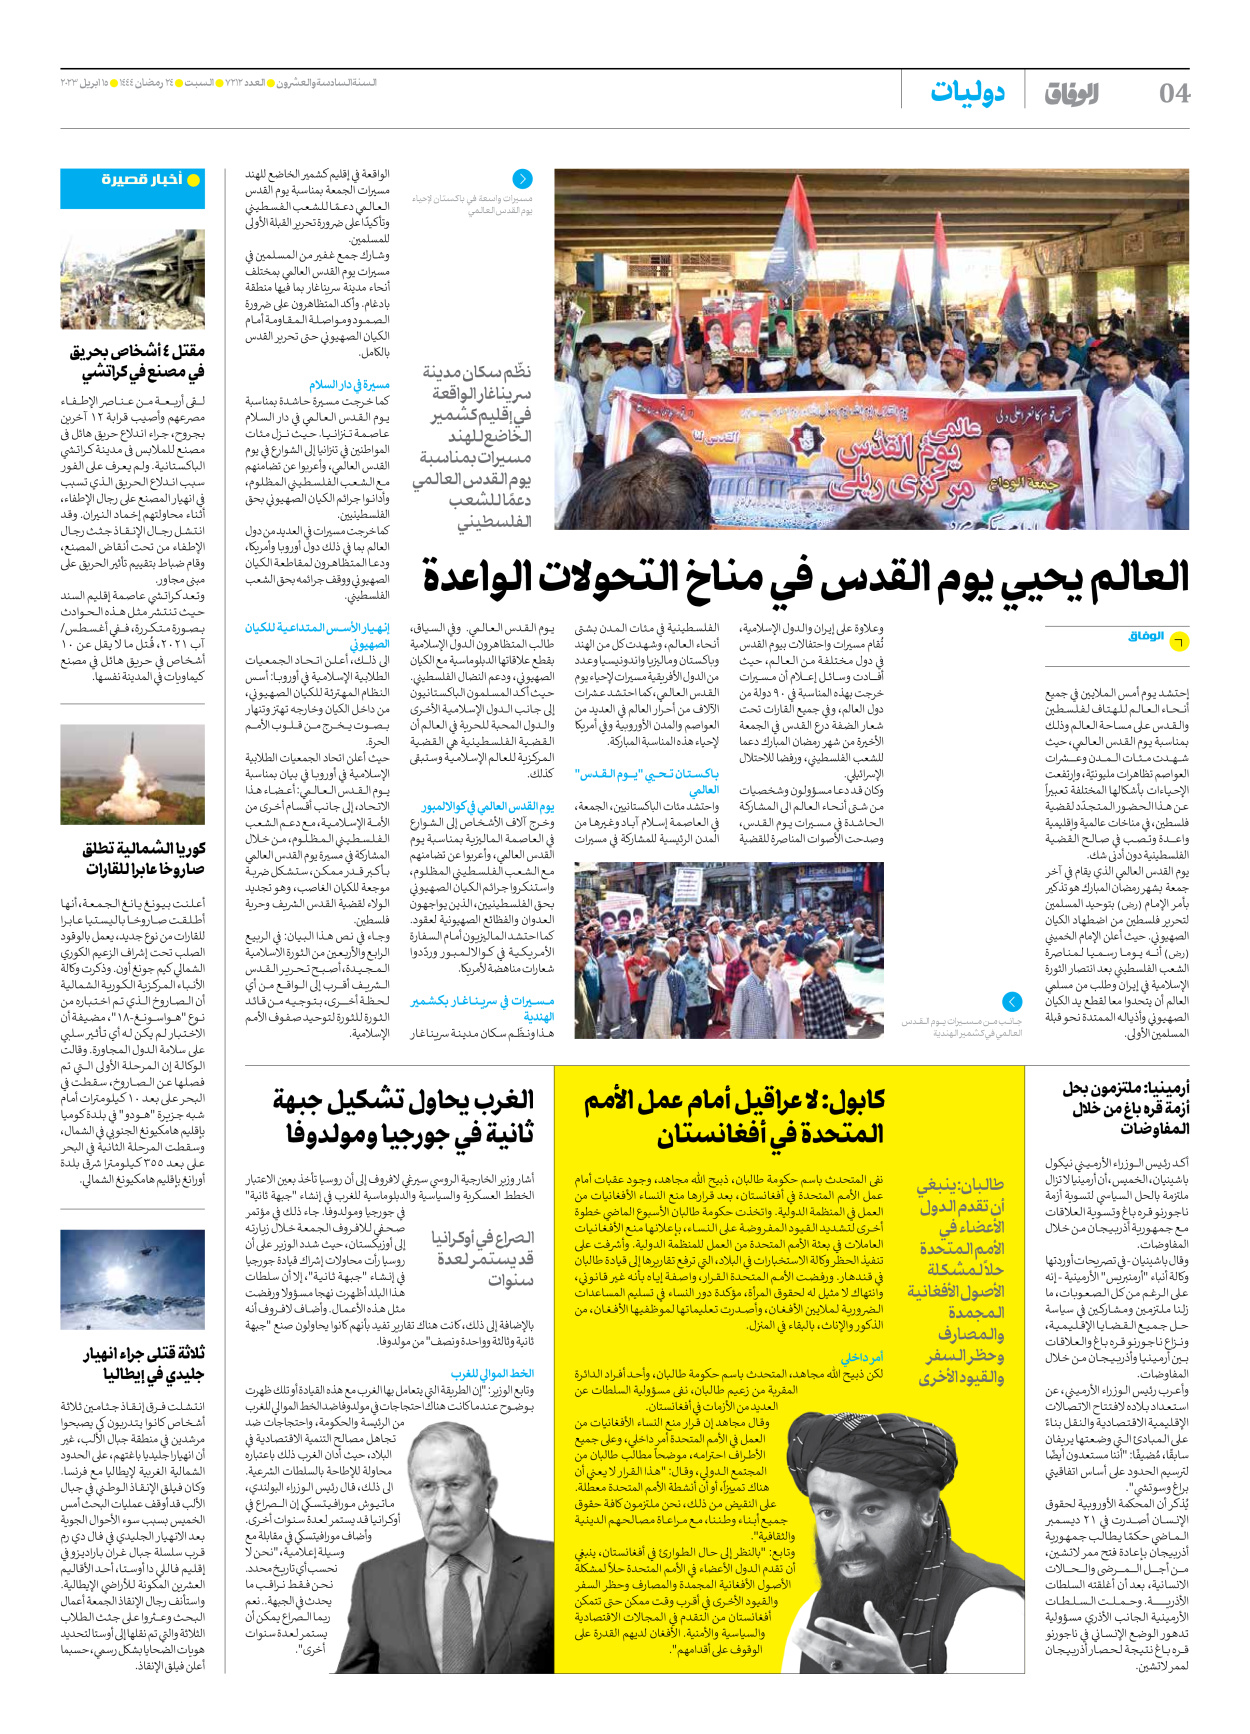 صحیفة ایران الدولیة الوفاق - العدد سبعة آلاف ومائتان واثنا عشر - ١٥ أبريل ٢٠٢٣ - الصفحة ٤